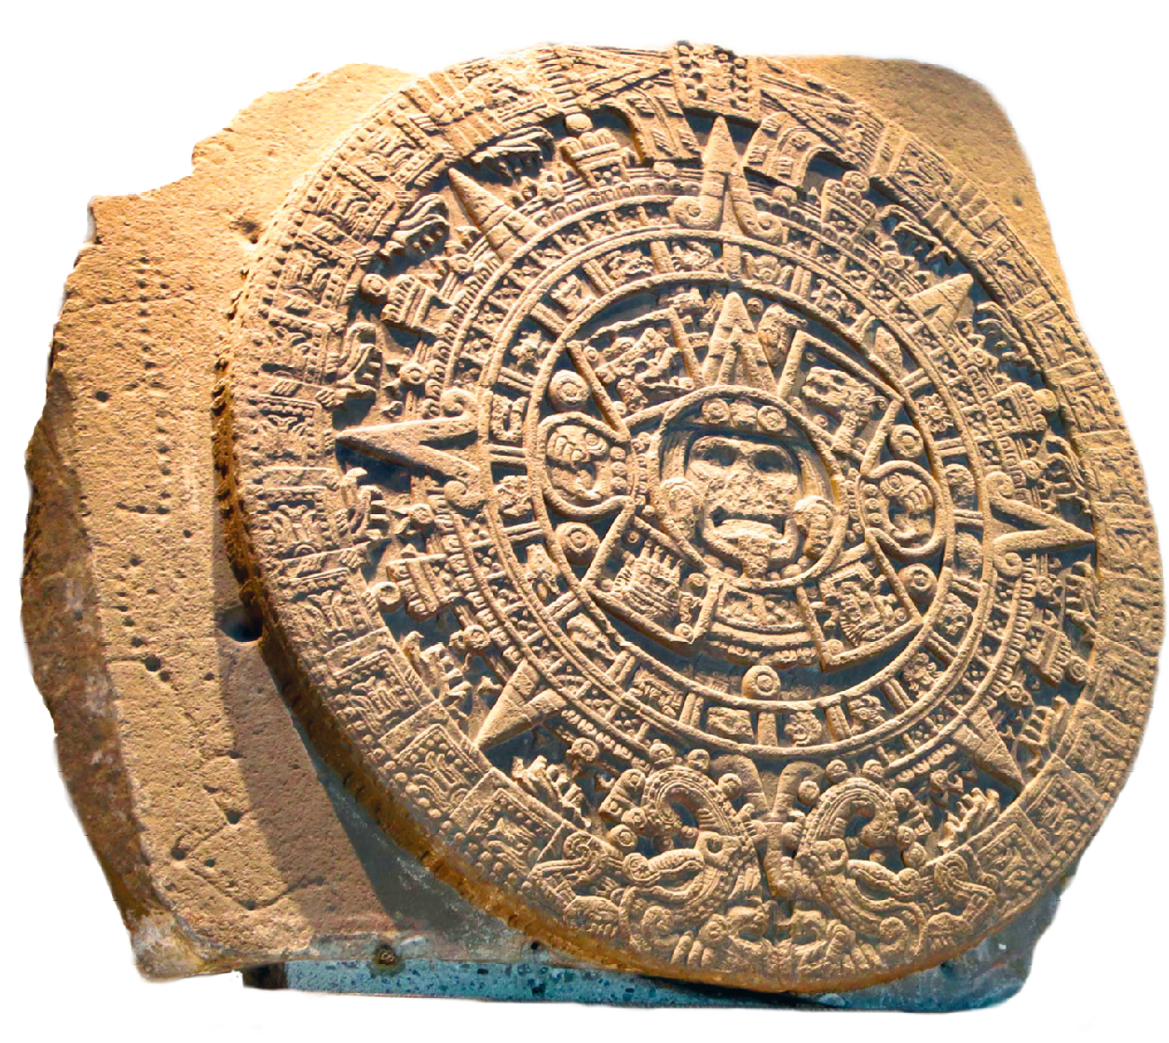 Fotografia. Destaque para um calendário entalhado em pedra, contendo escritas e símbolos, dispostos de forma simétrica em um círculo, com a representação de um rosto, caracterizando o deus-sol, ao centro.